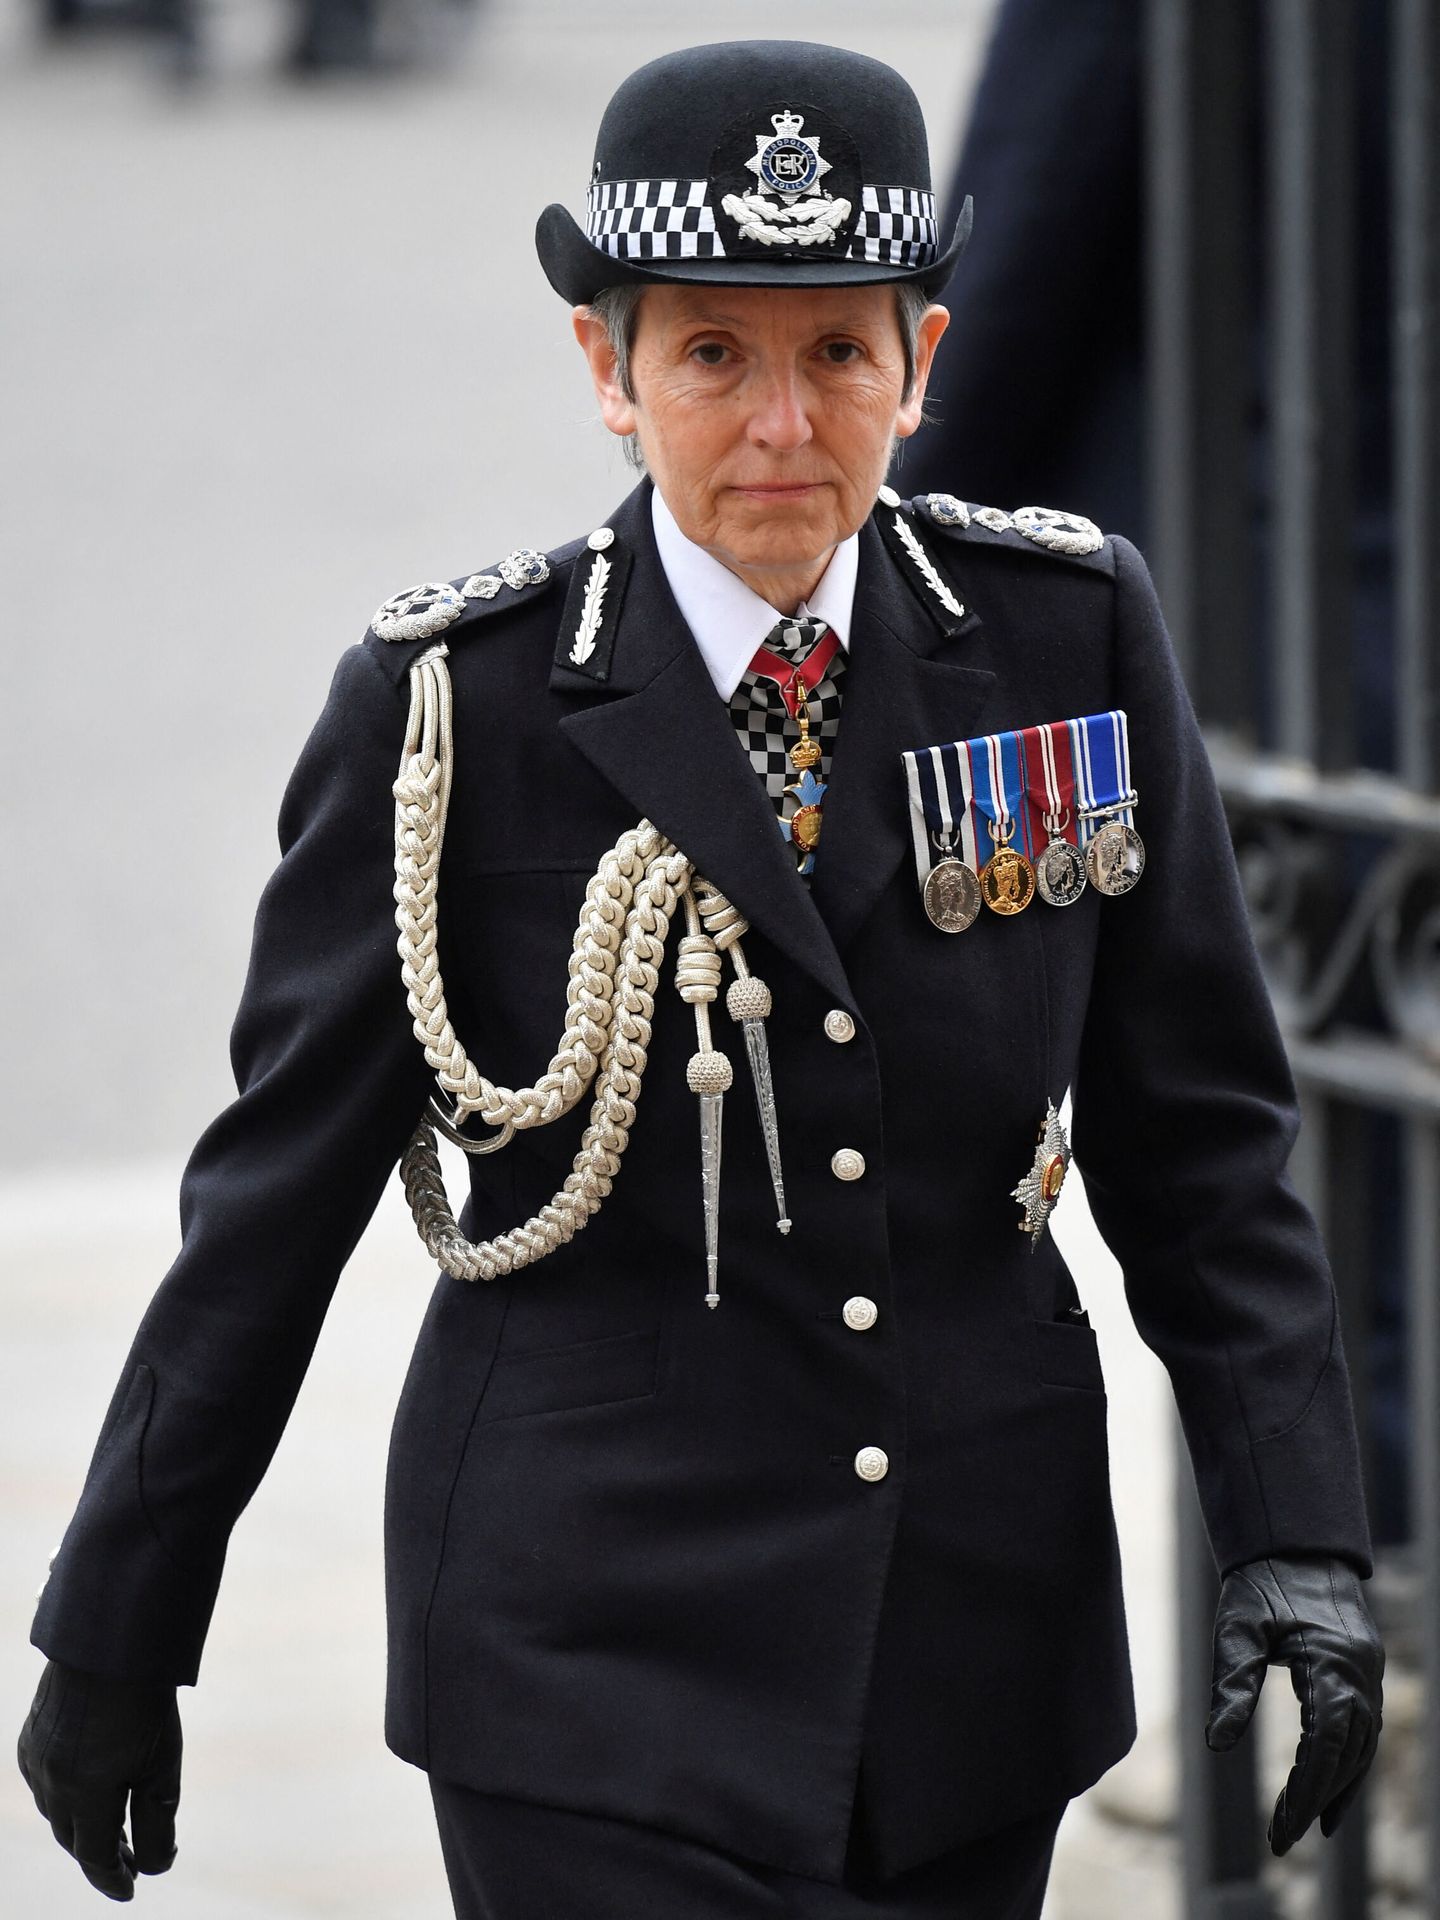 La comisaria de la Policía Metropolitana, a su llegada a la abadía de Westminster. (Reuters/Toby Melville)